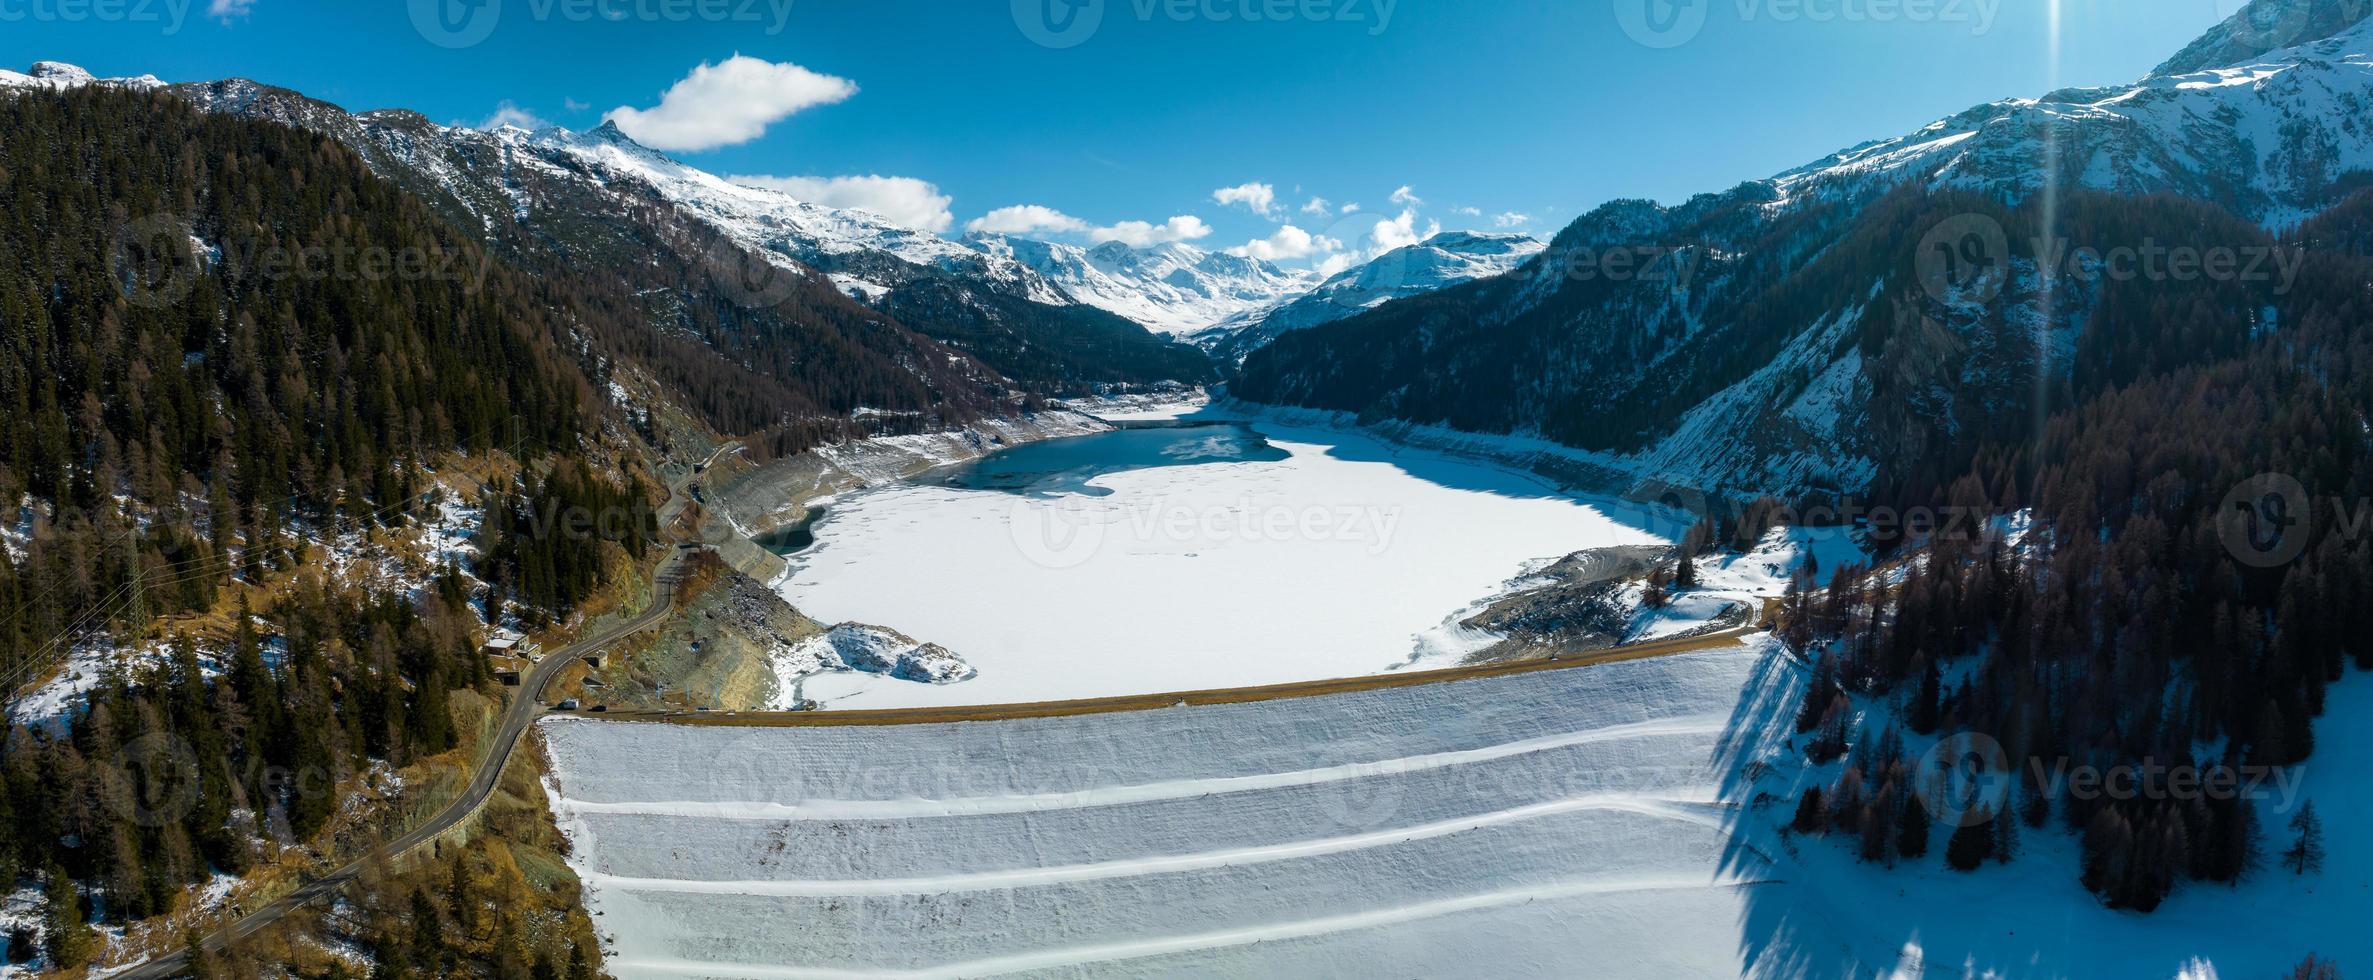 antenne visie van de water dam en reservoir meer in Zwitsers Alpen bergen produceren duurzame waterkracht foto